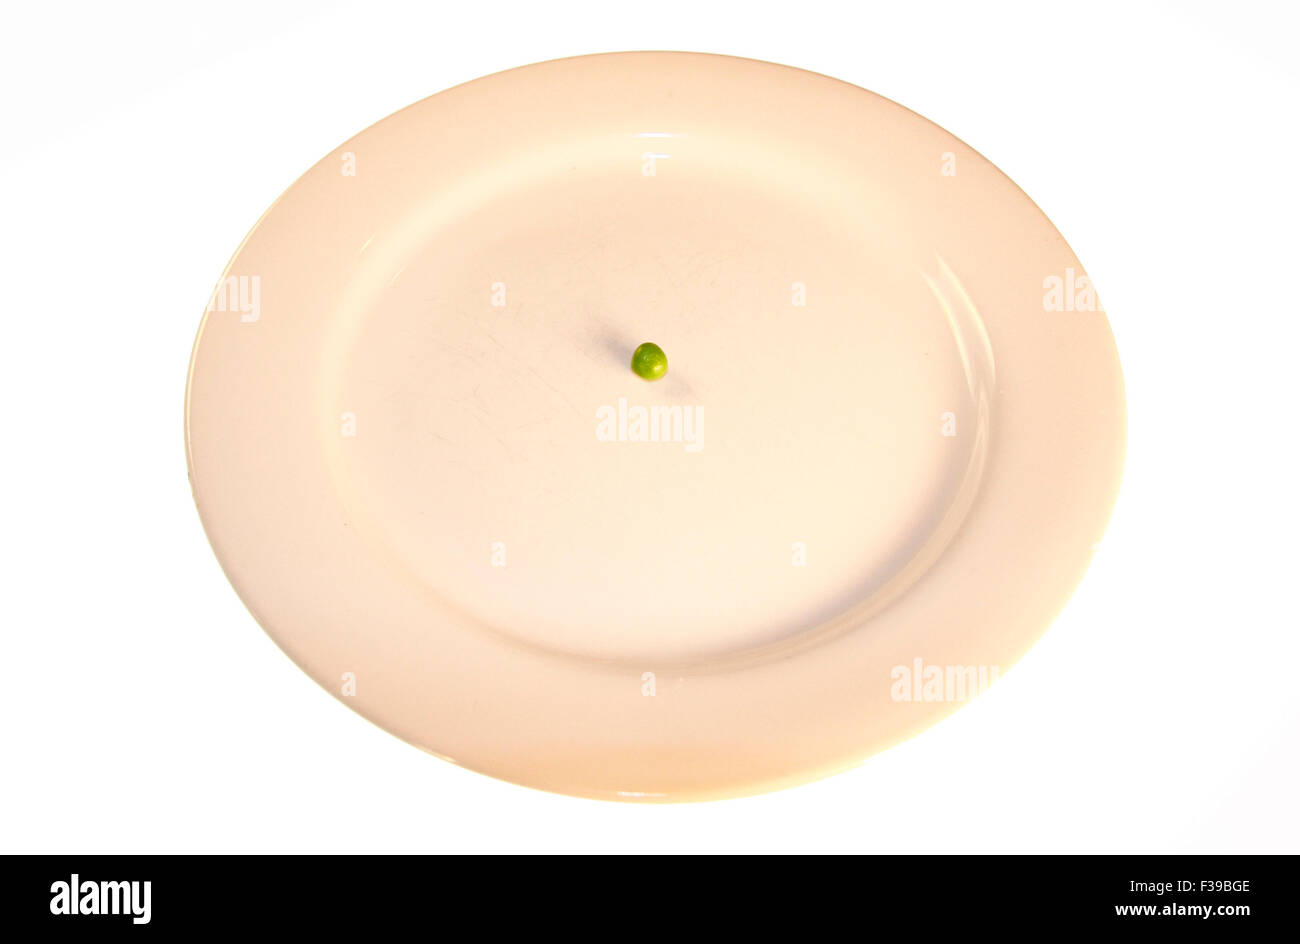 Diaet/ diet: Symbolbild: eine aus einer Bohne bestehende Mahlzeit/ a dish consisting only of one bean - Symbolbild Nahrungsmitte Stock Photo